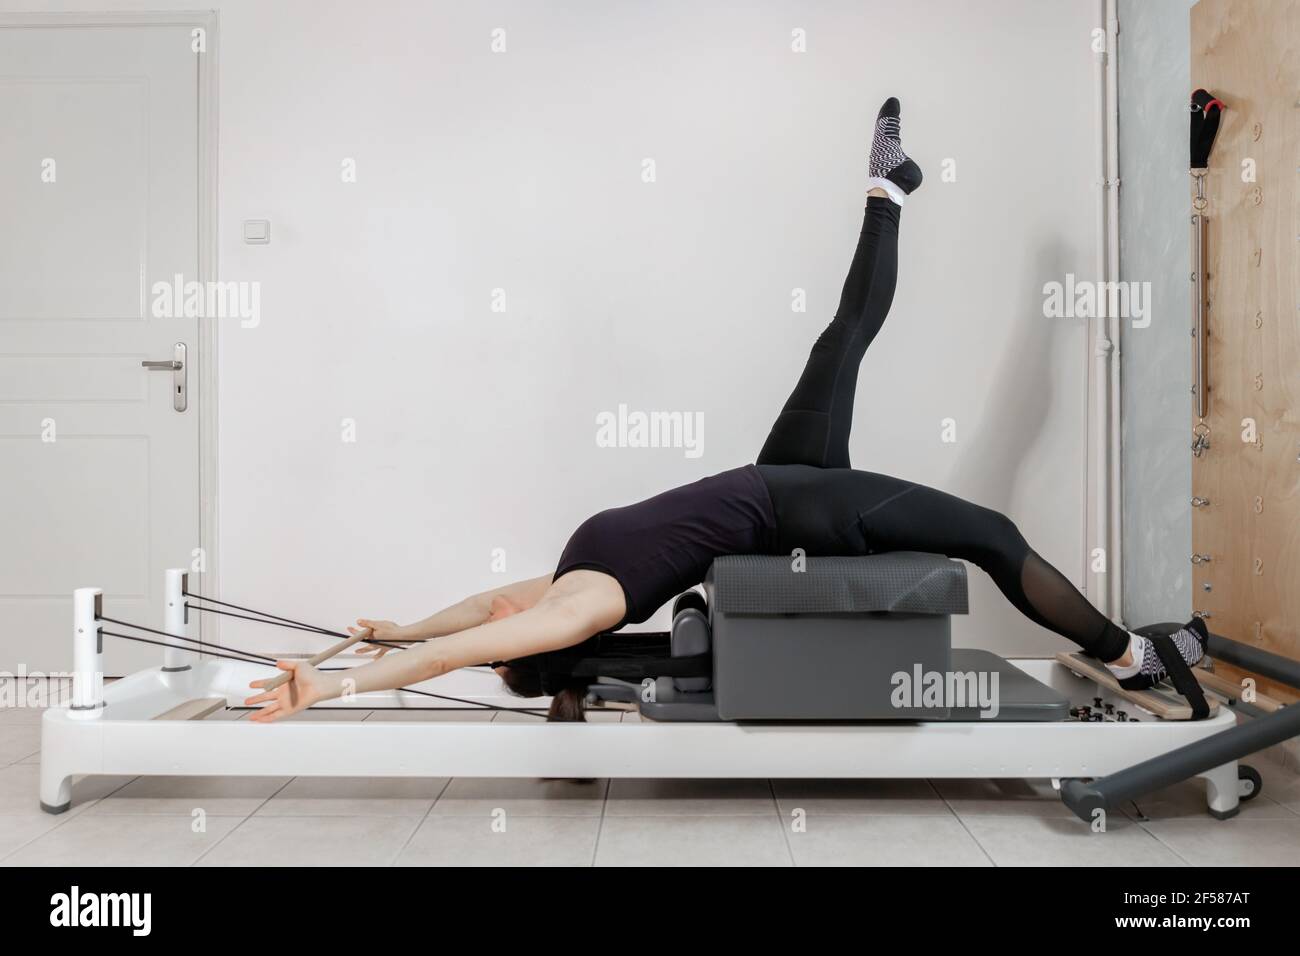 Una mujer haciendo ejercicios de pilates en una cama reformada